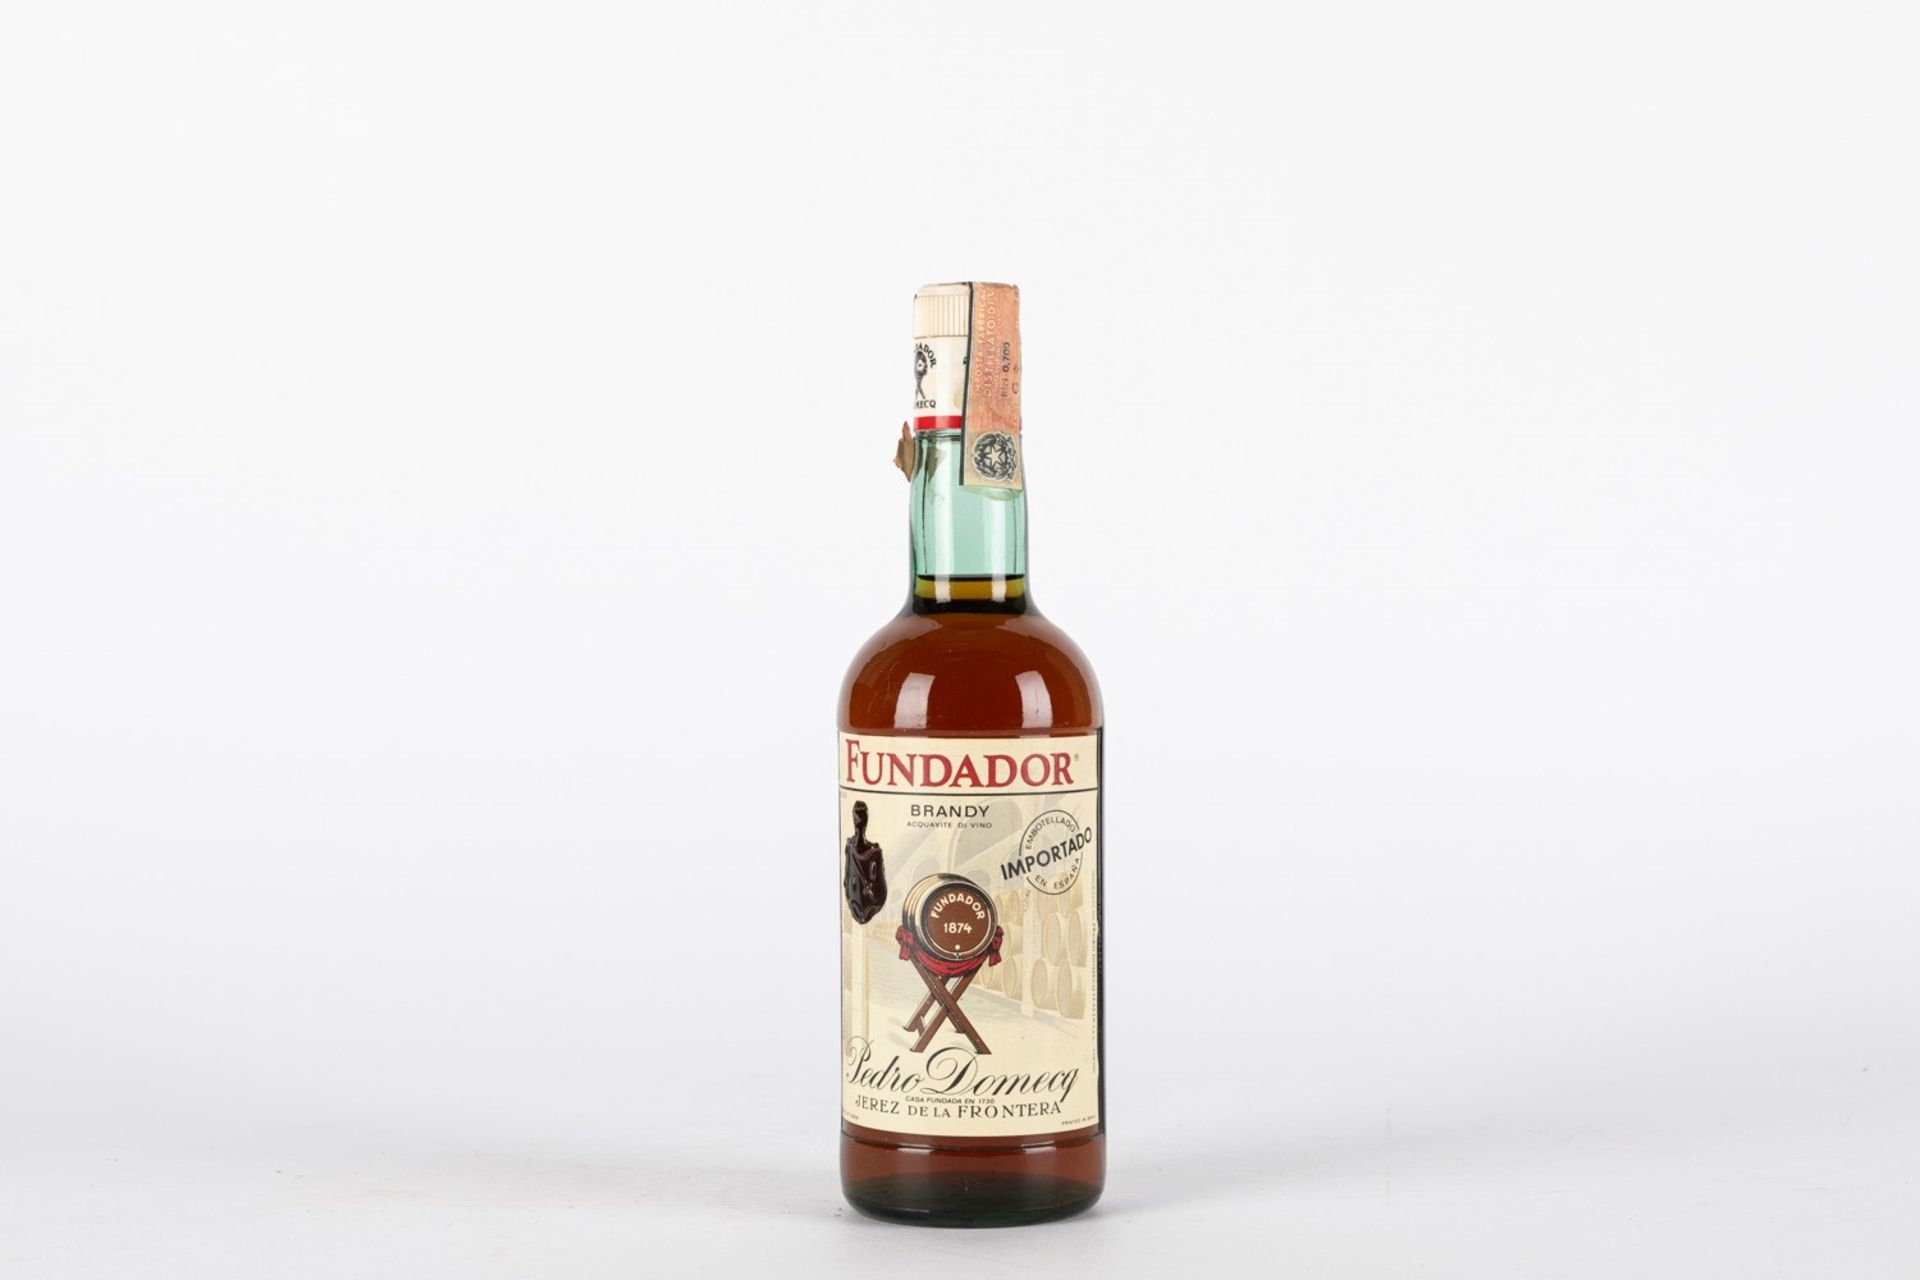 Spain - Brandy / Pedro Domecq Fundador Brandy